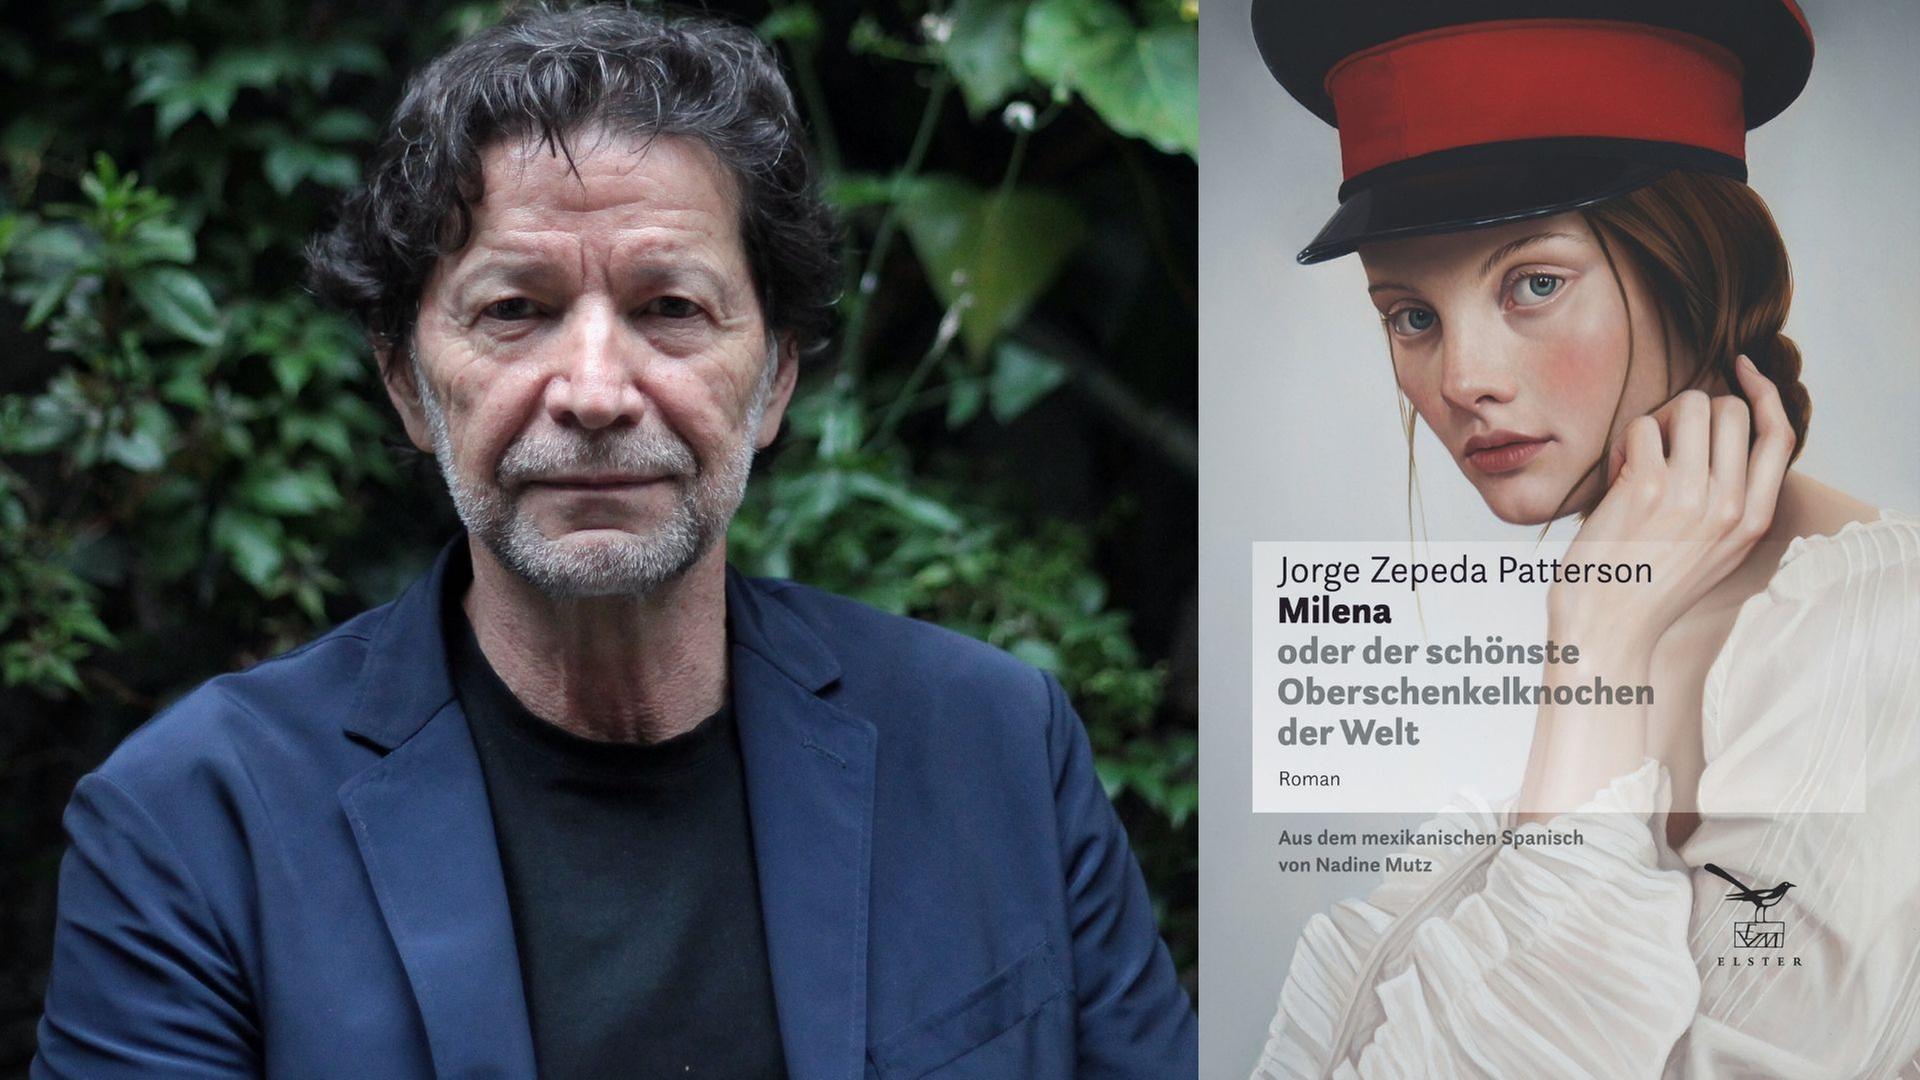 Zu sehen ist der Autor Jorge Zepeda Patterson und das Cover seines Romans "Milena oder der schönste Oberschenkelknochen der Welt".